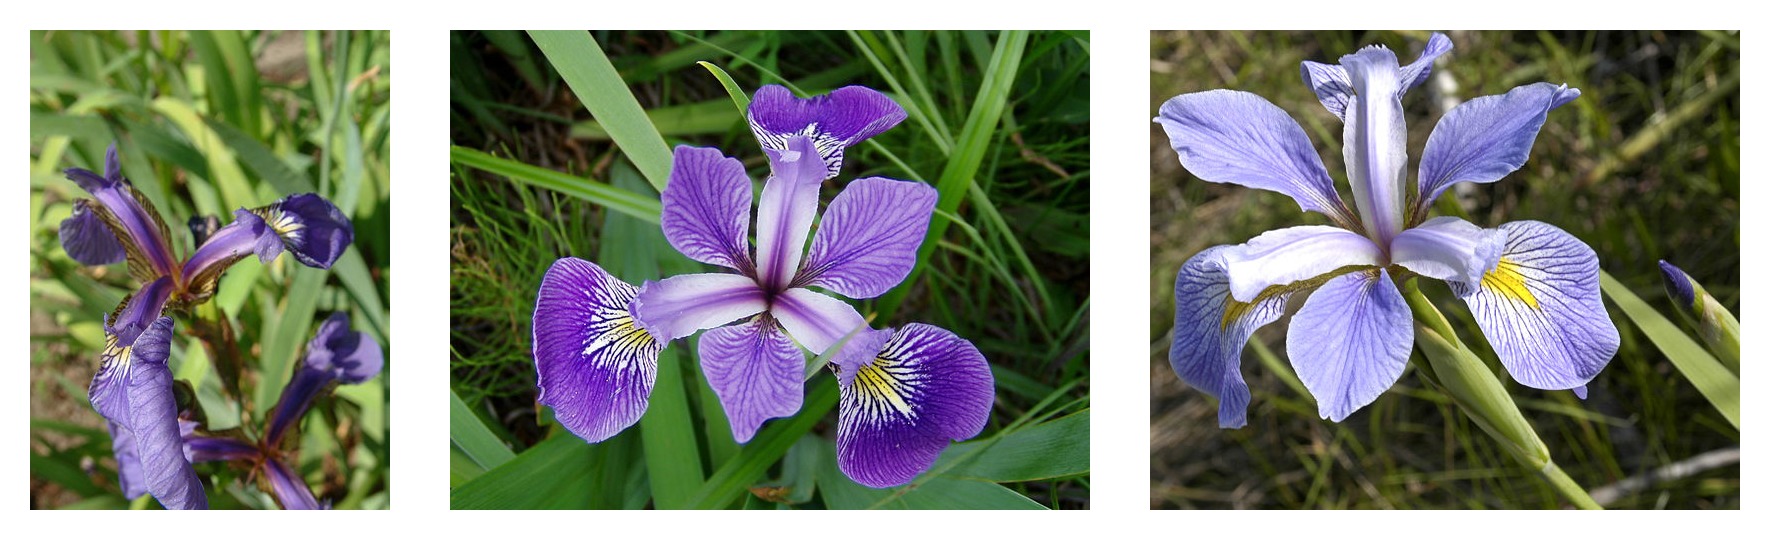 Petal geometrisi üç iris türüyle karşılaştırıldı: Iris setosa, Iris virginica ve Iris versicolor